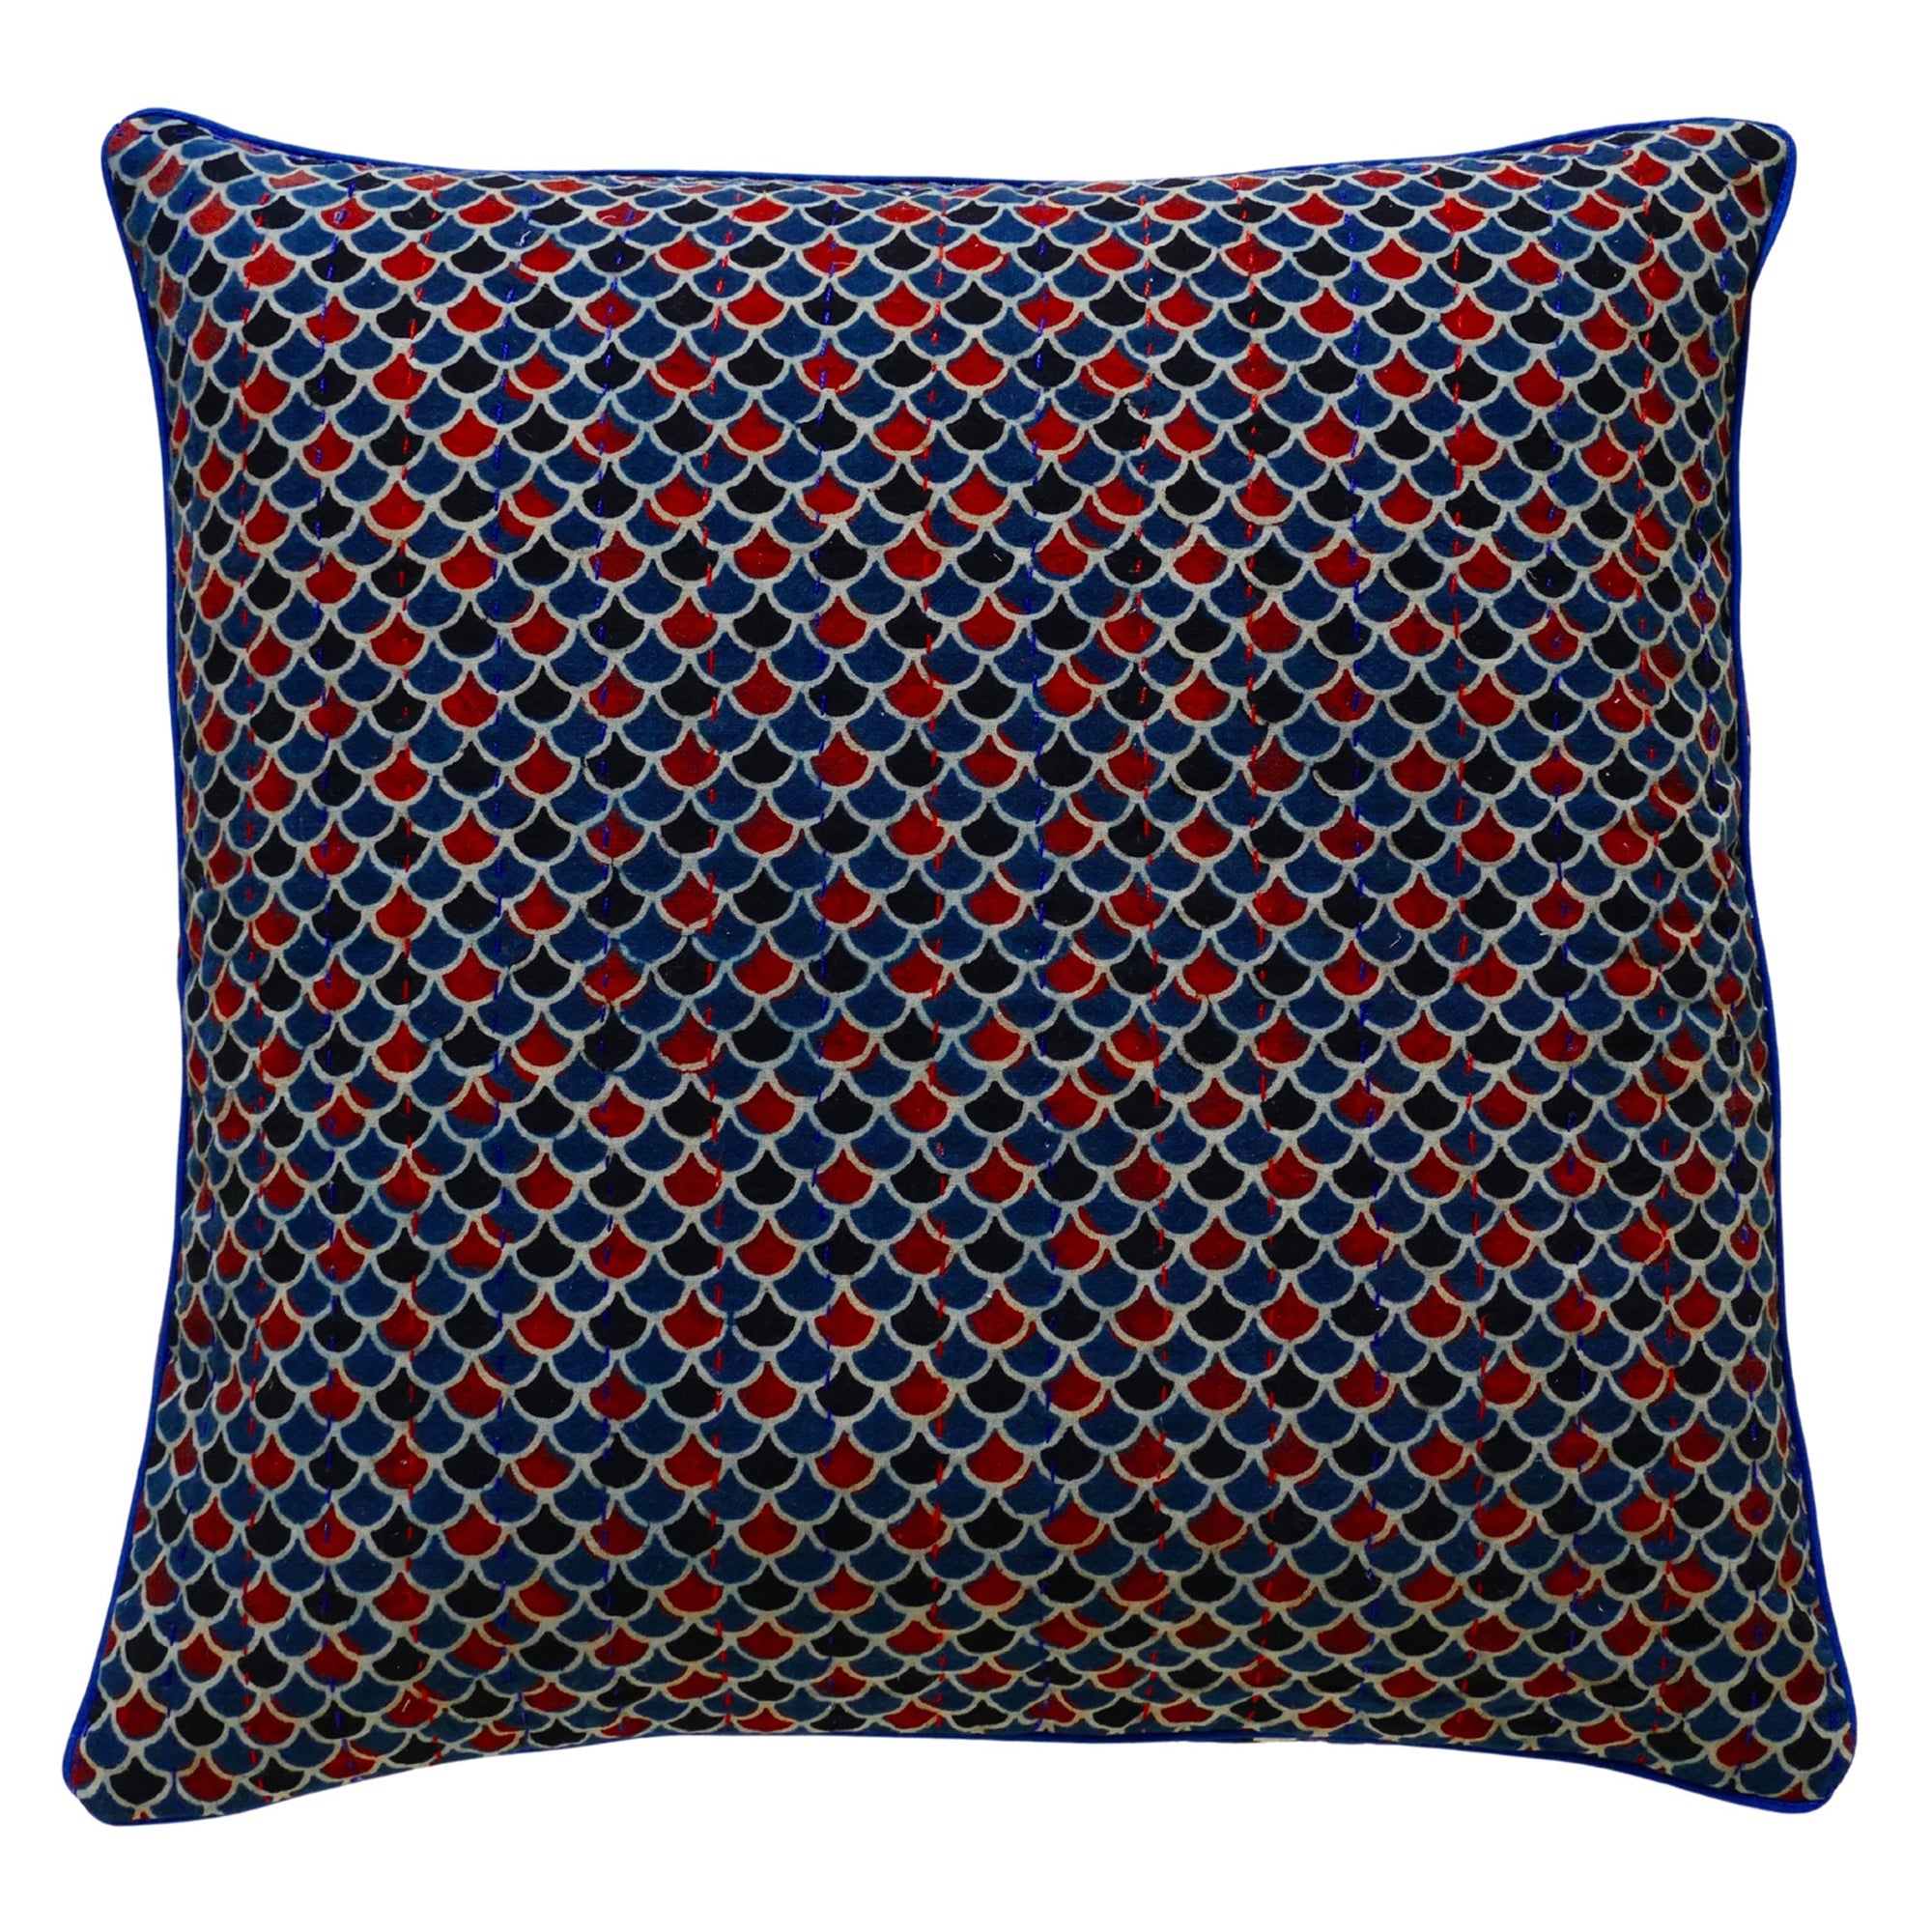 Persian cushion